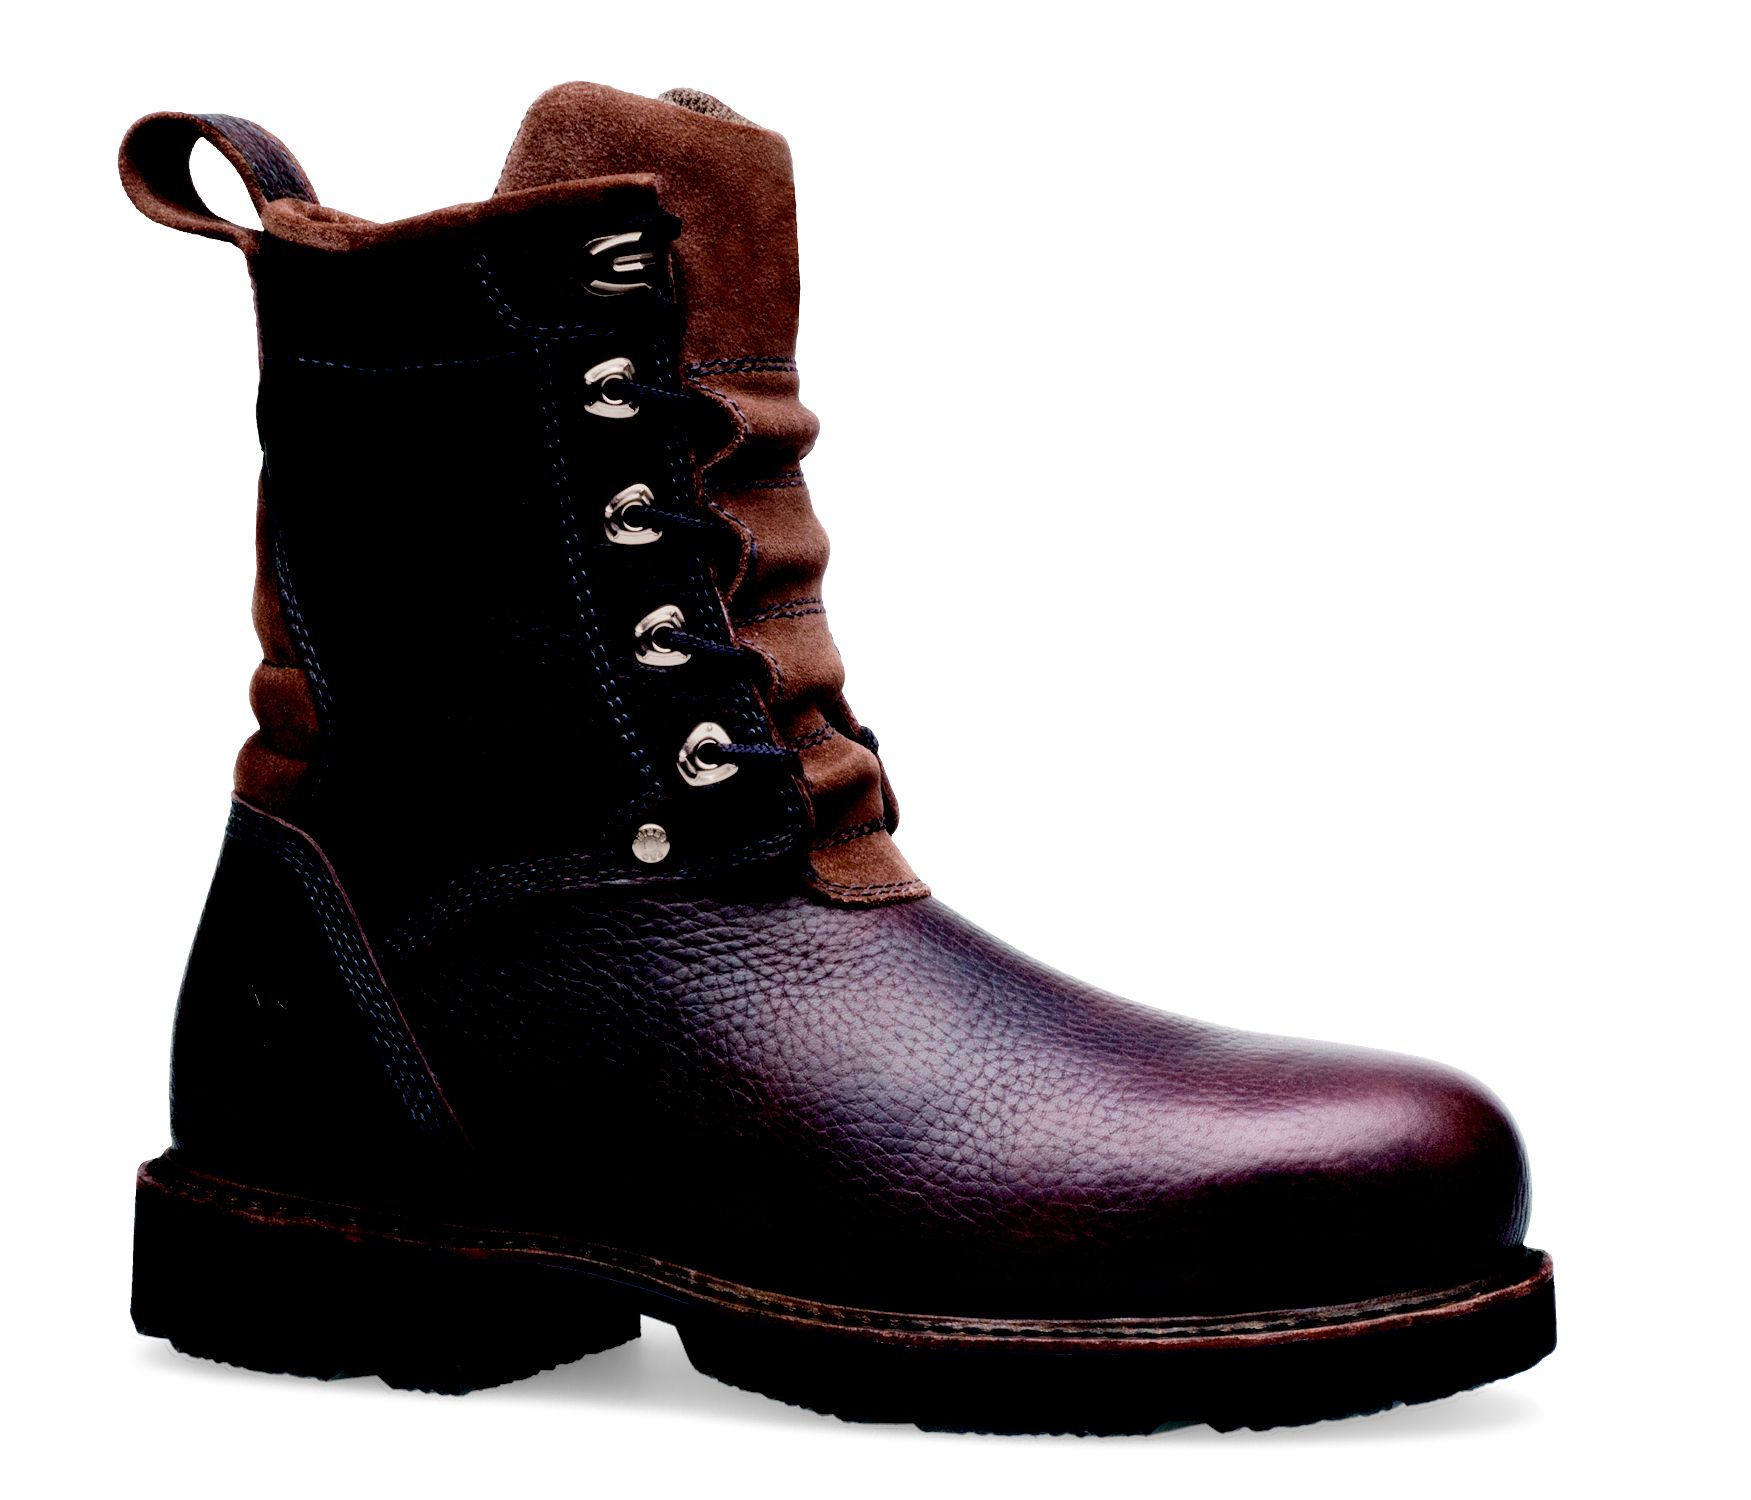 Timberland PRO Men's 8" Steel Toe Welding Boot - Brown